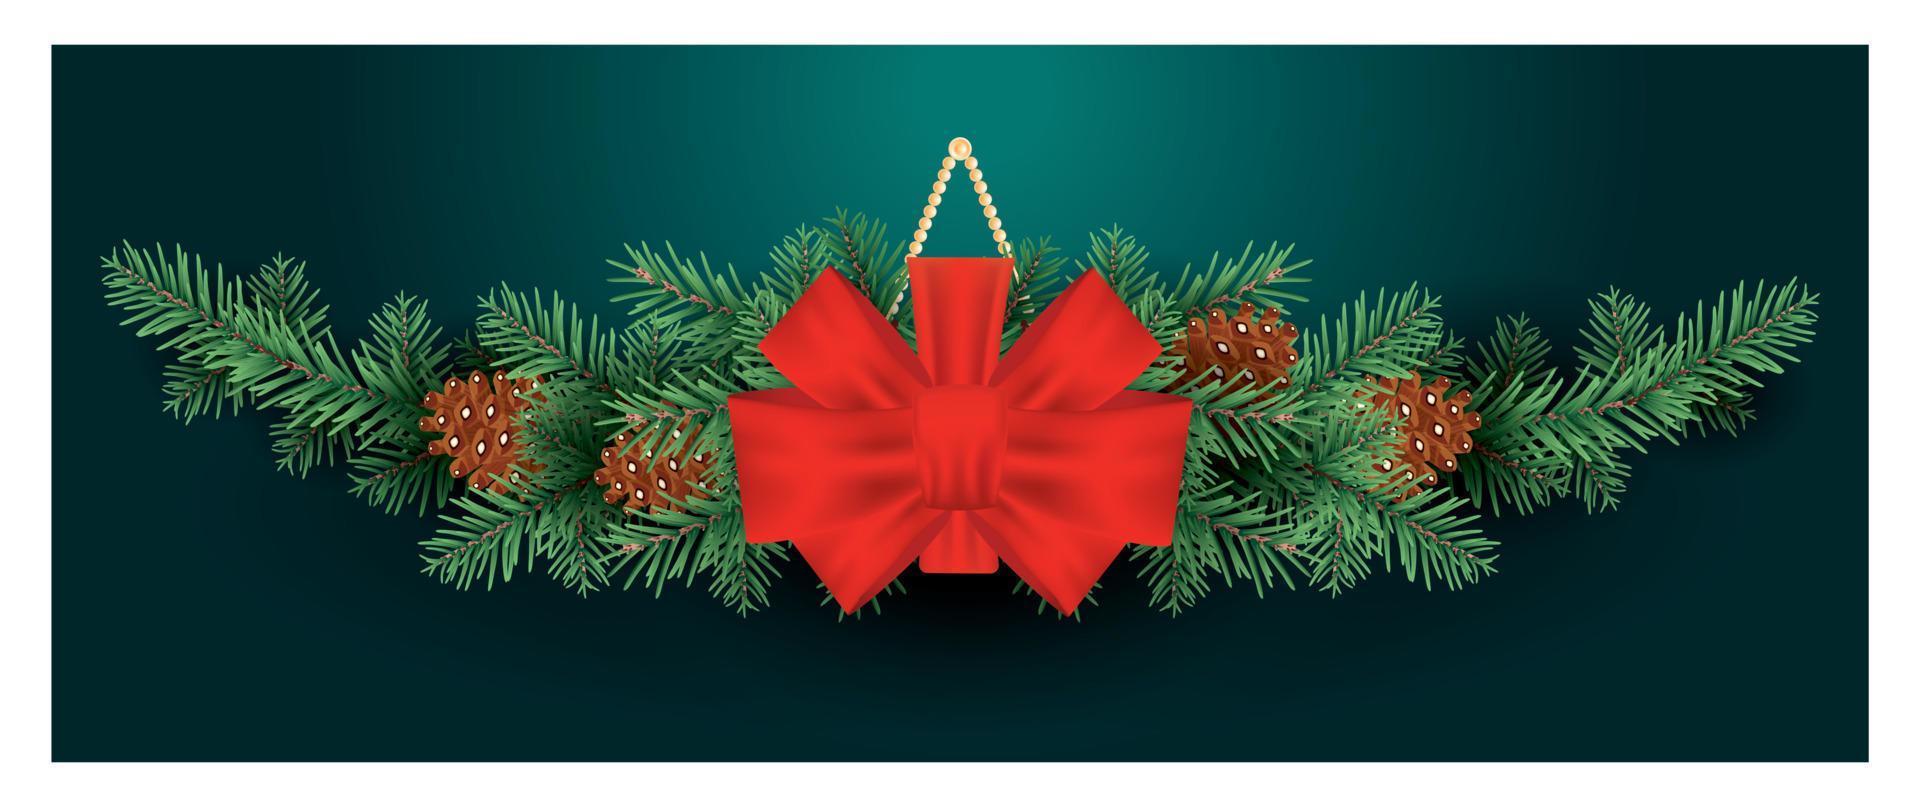 Kerstmis decoratie met rood boog Aan Spar boom takken met kegels. groen achtergrond. vector